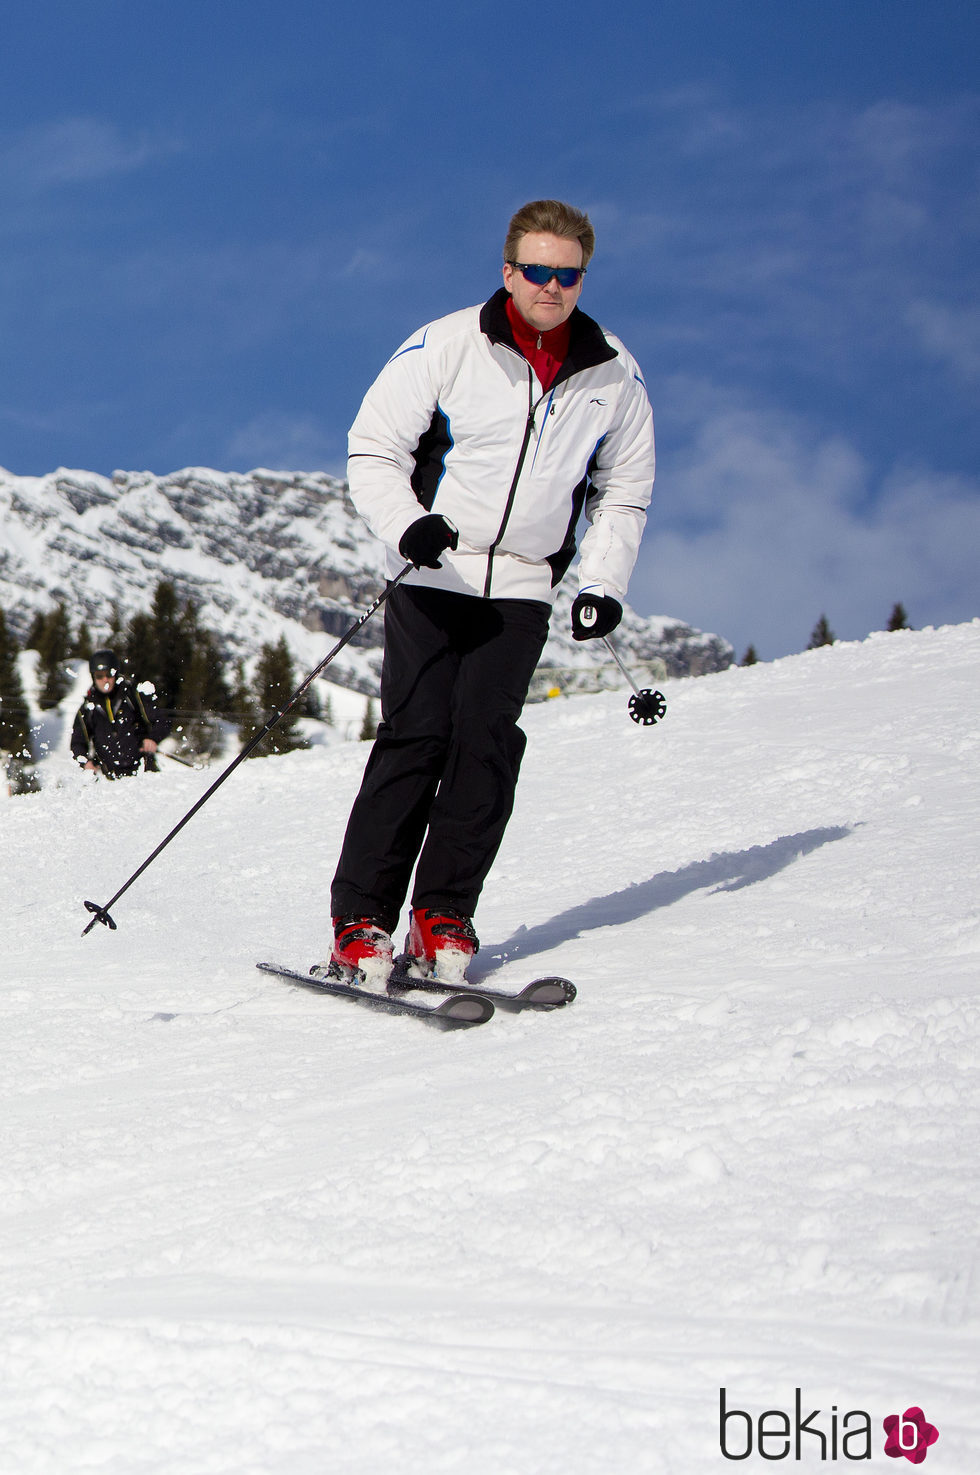 Guillermo Alejandro de Holanda esquiando en sus vacaciones de invierno en Austria